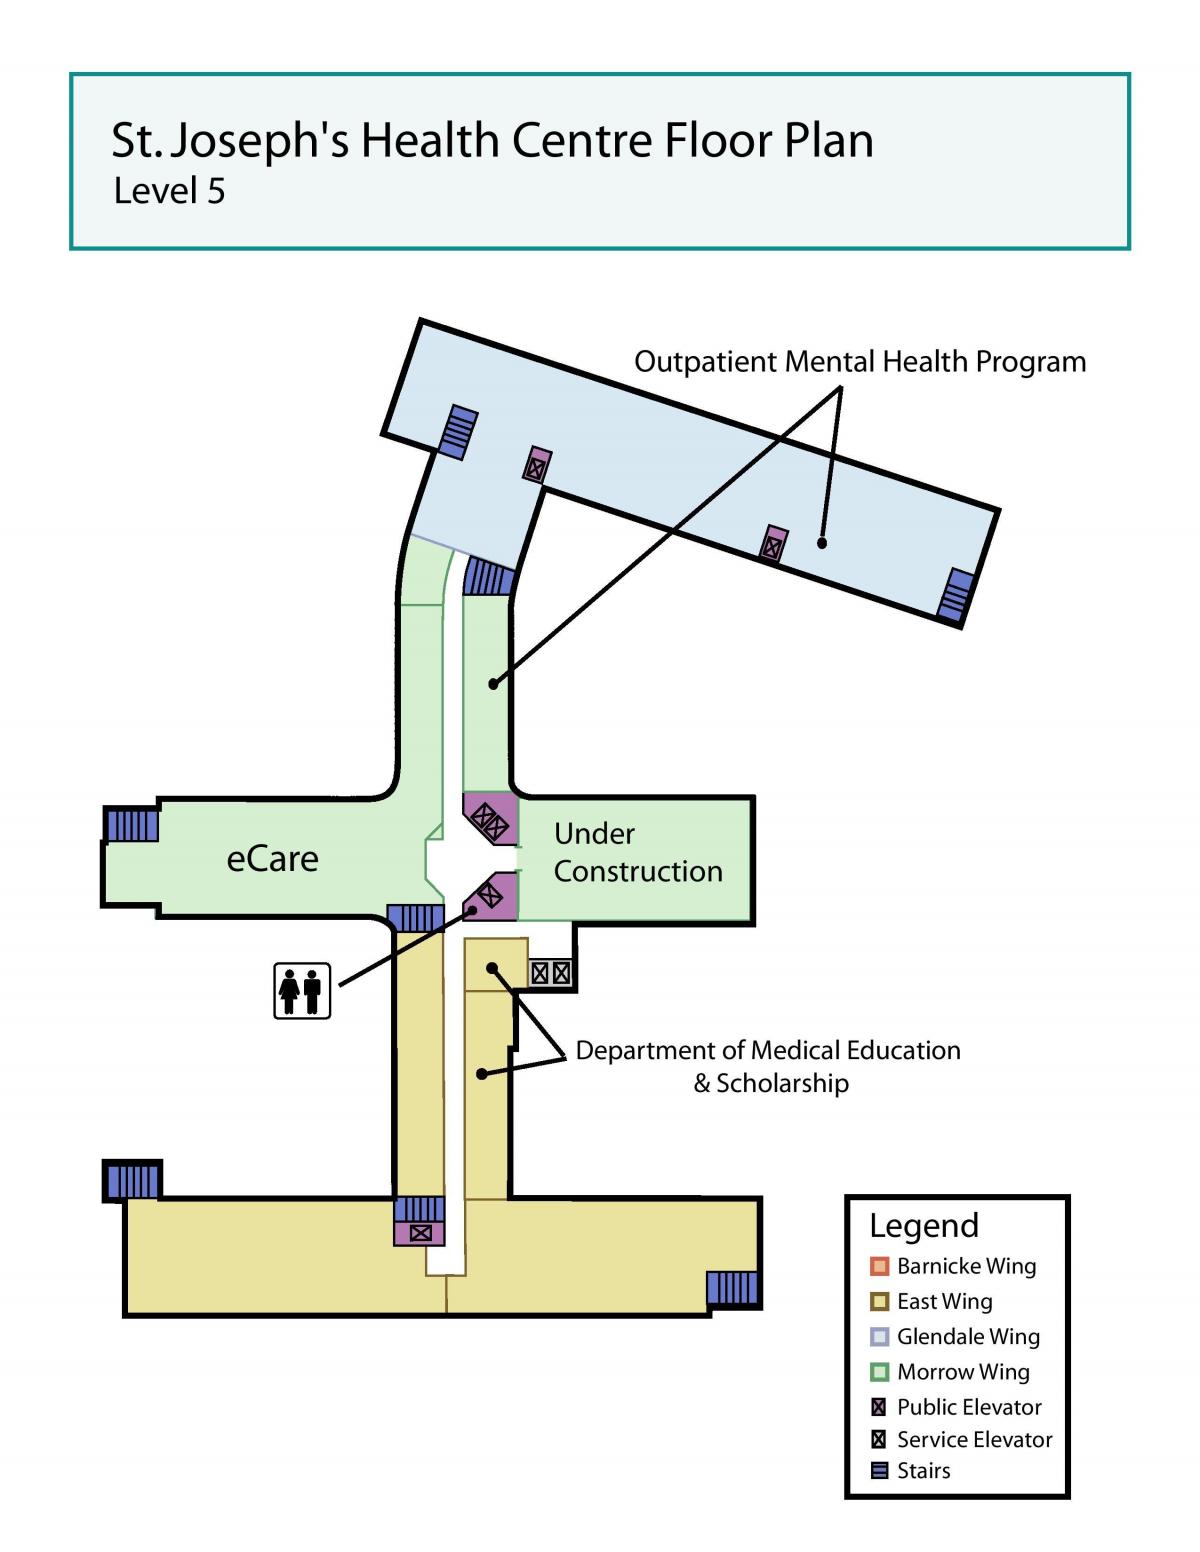 แผนที่ของเซนต์โจเซฟสุขภาพของศูนย์กลางโตรอนโตอยู่ในระดับ 5